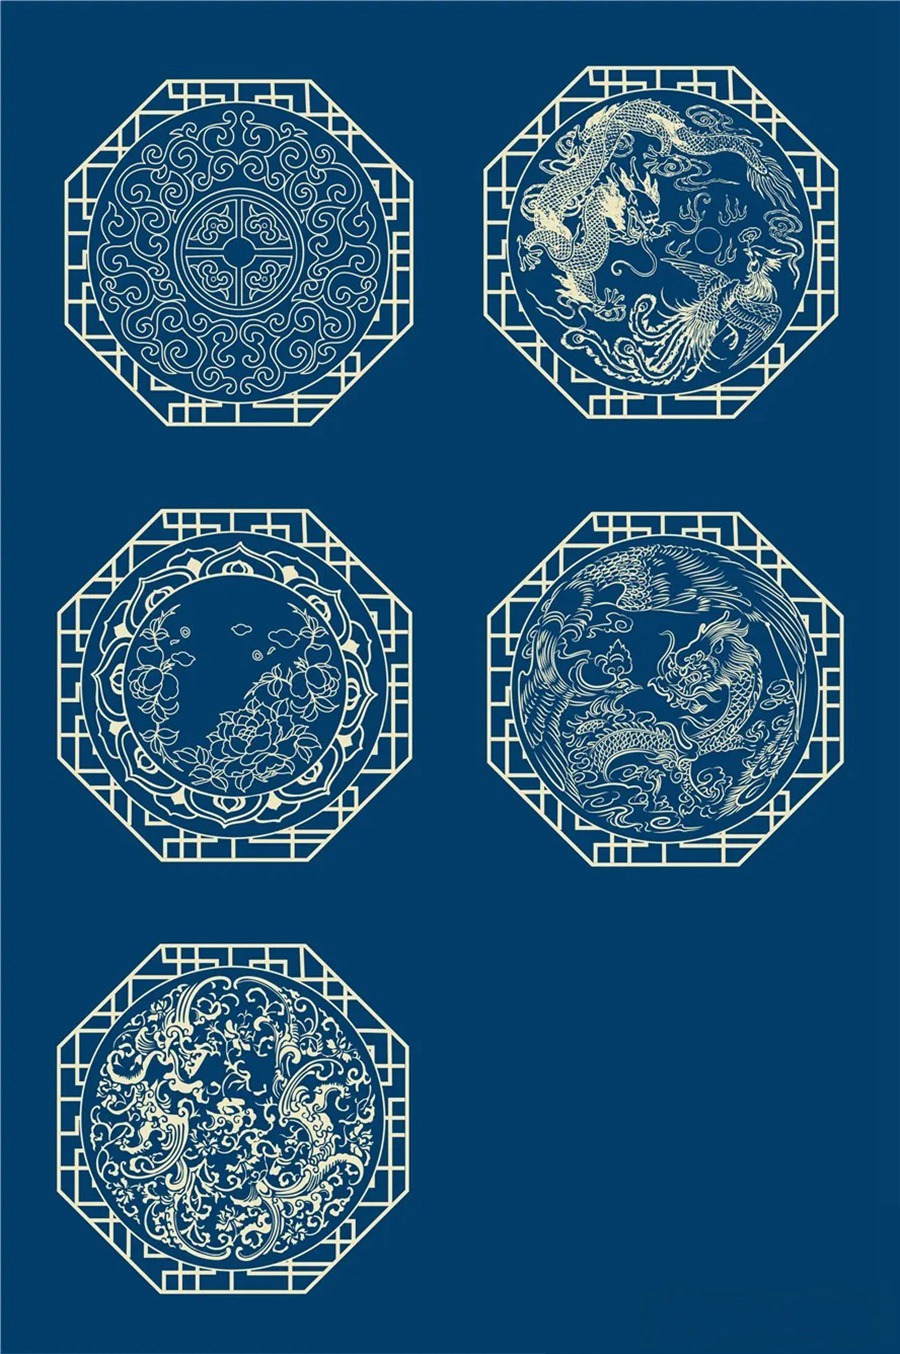 中国风传统古典青花瓷图案花纹图形纹样AI矢量模板花纹设计素材 图片素材 第9张